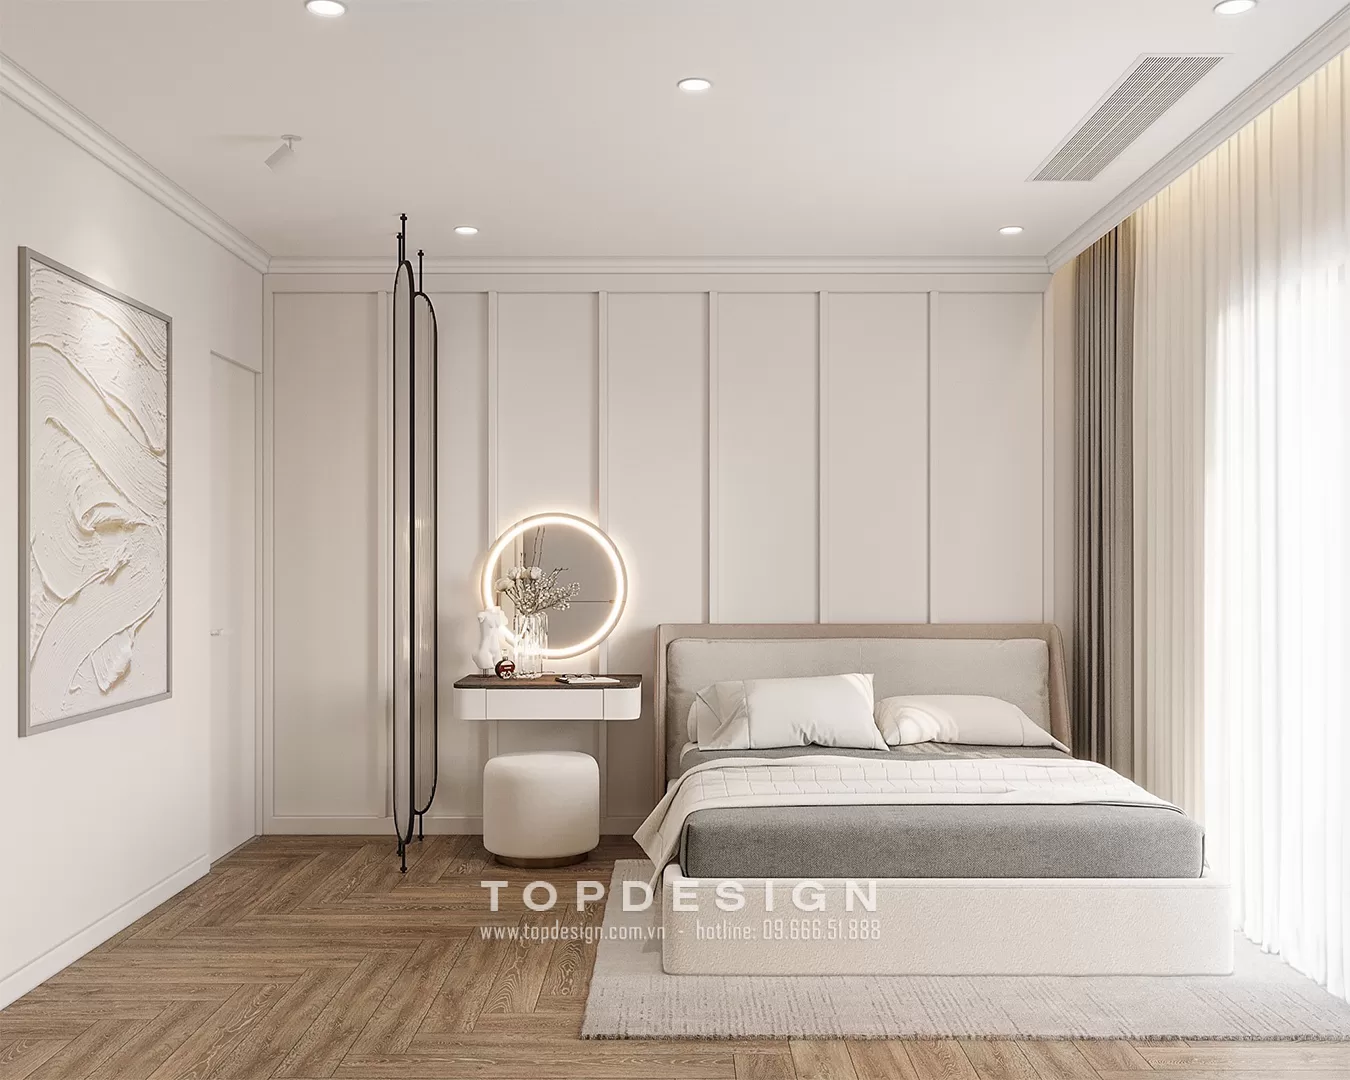 Thiết kế nội thất nhà phố đương đại - TOPDESIGN - 7